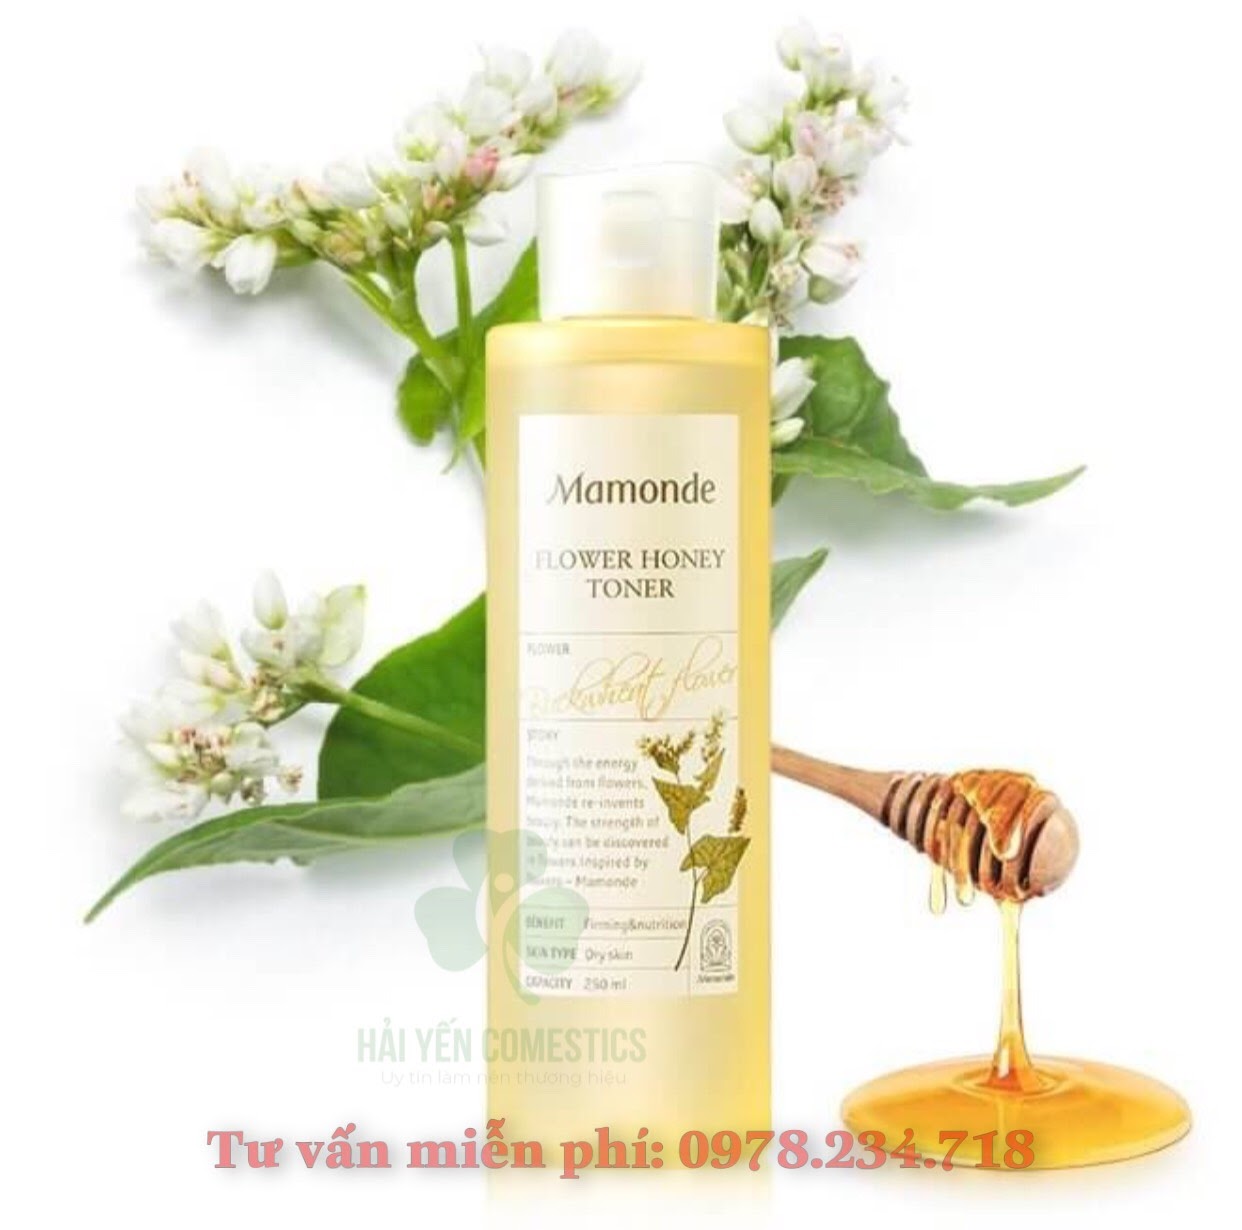 NHH Mamonde Flower Honey Toner